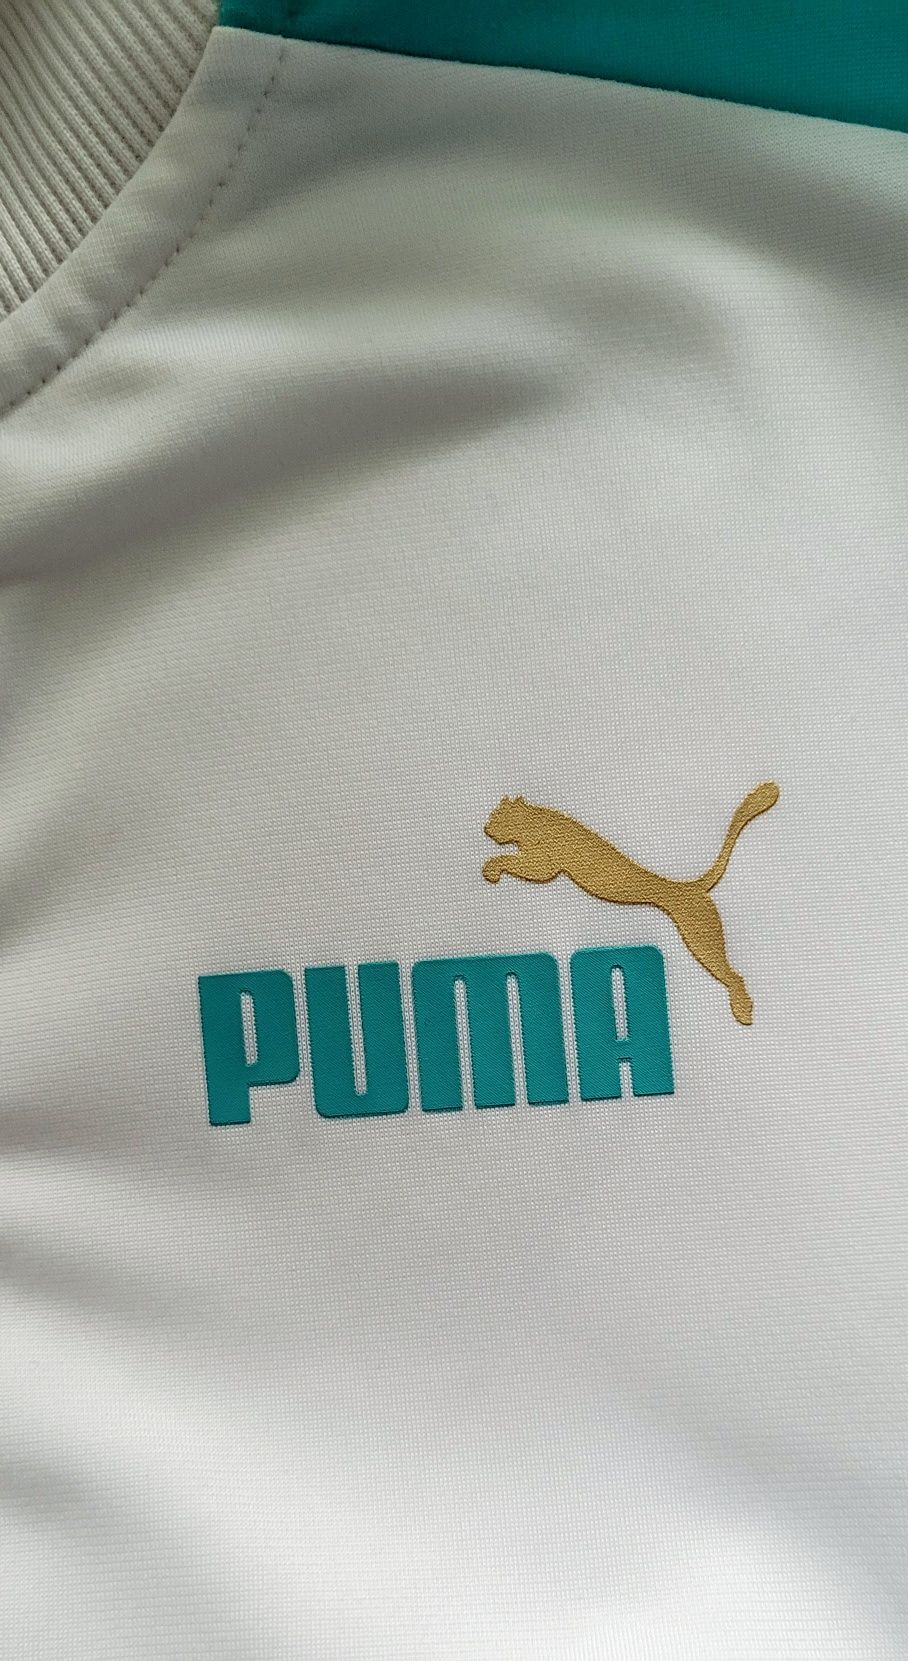 Usa Puma bluza na zamek logowana hit